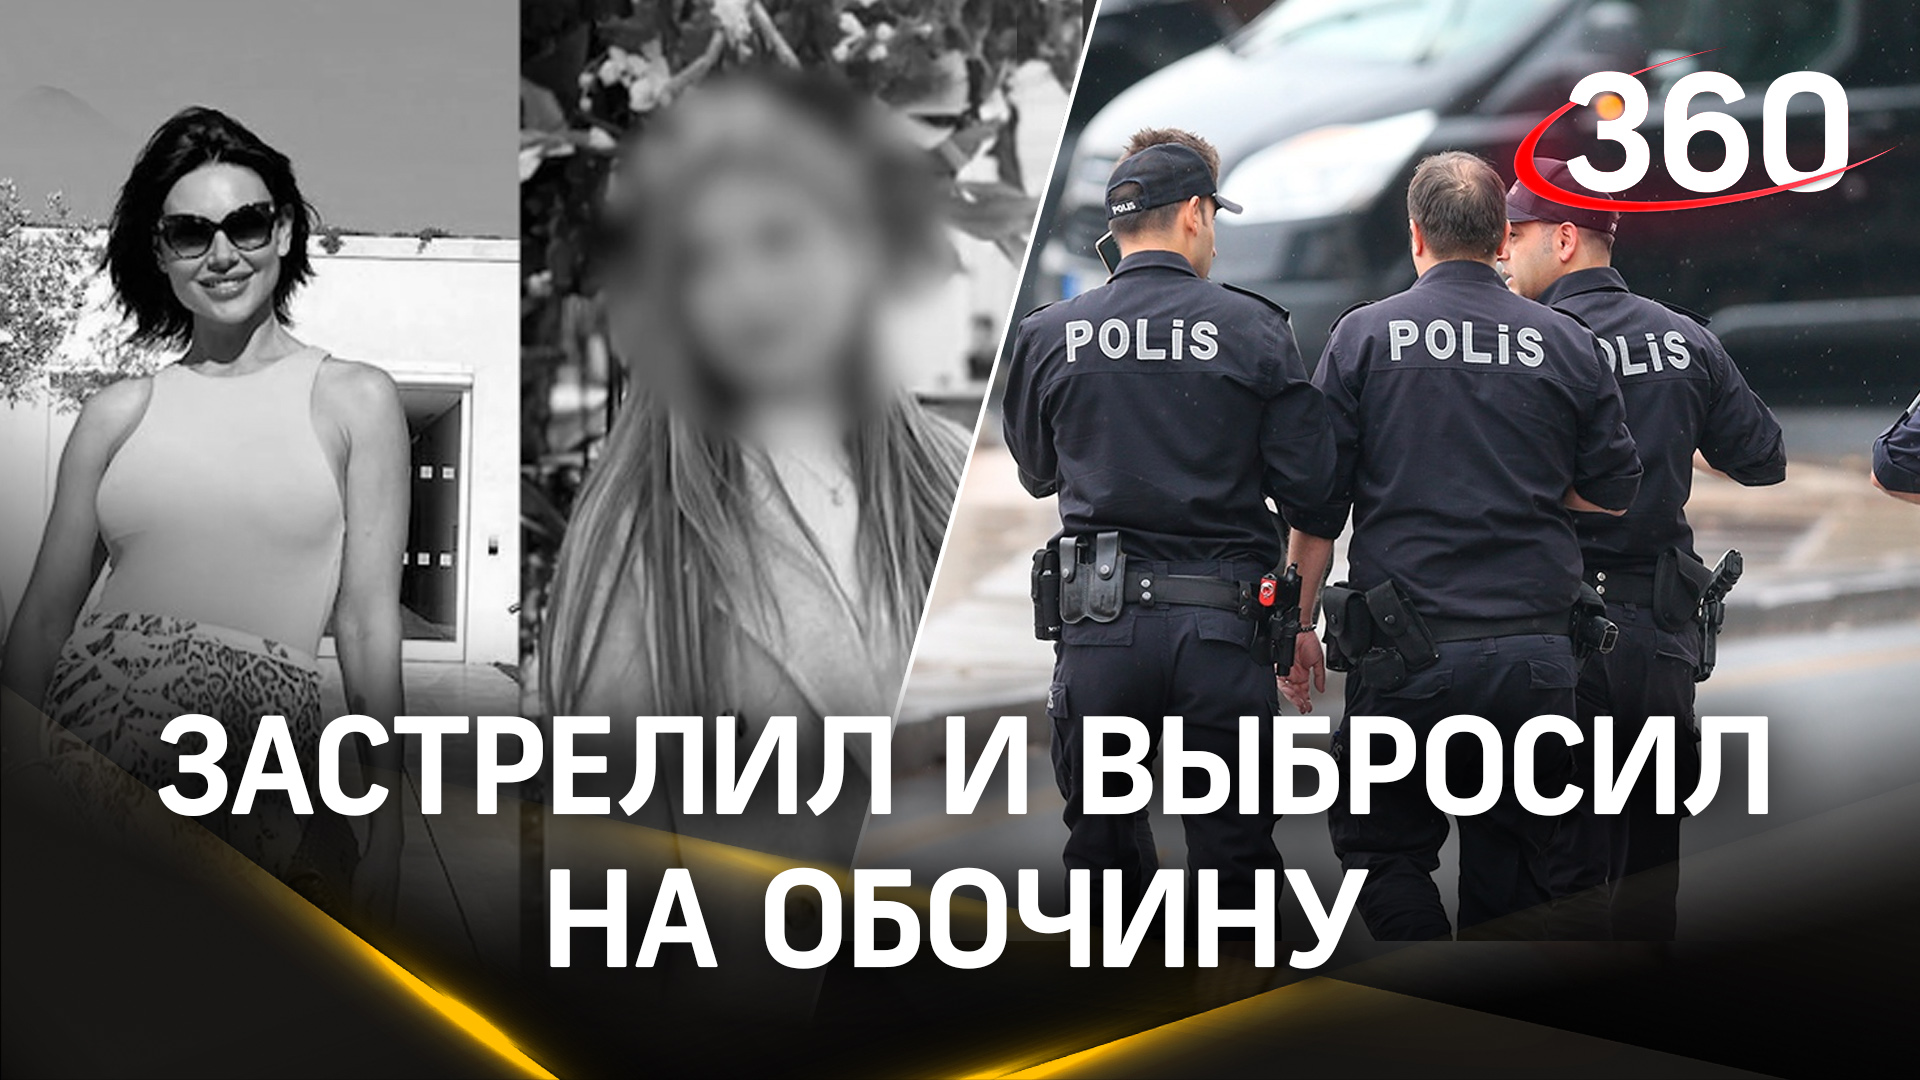 Хладнокровно застрелил и выбросил на обочину: убийство российской модели и дочери в Турции